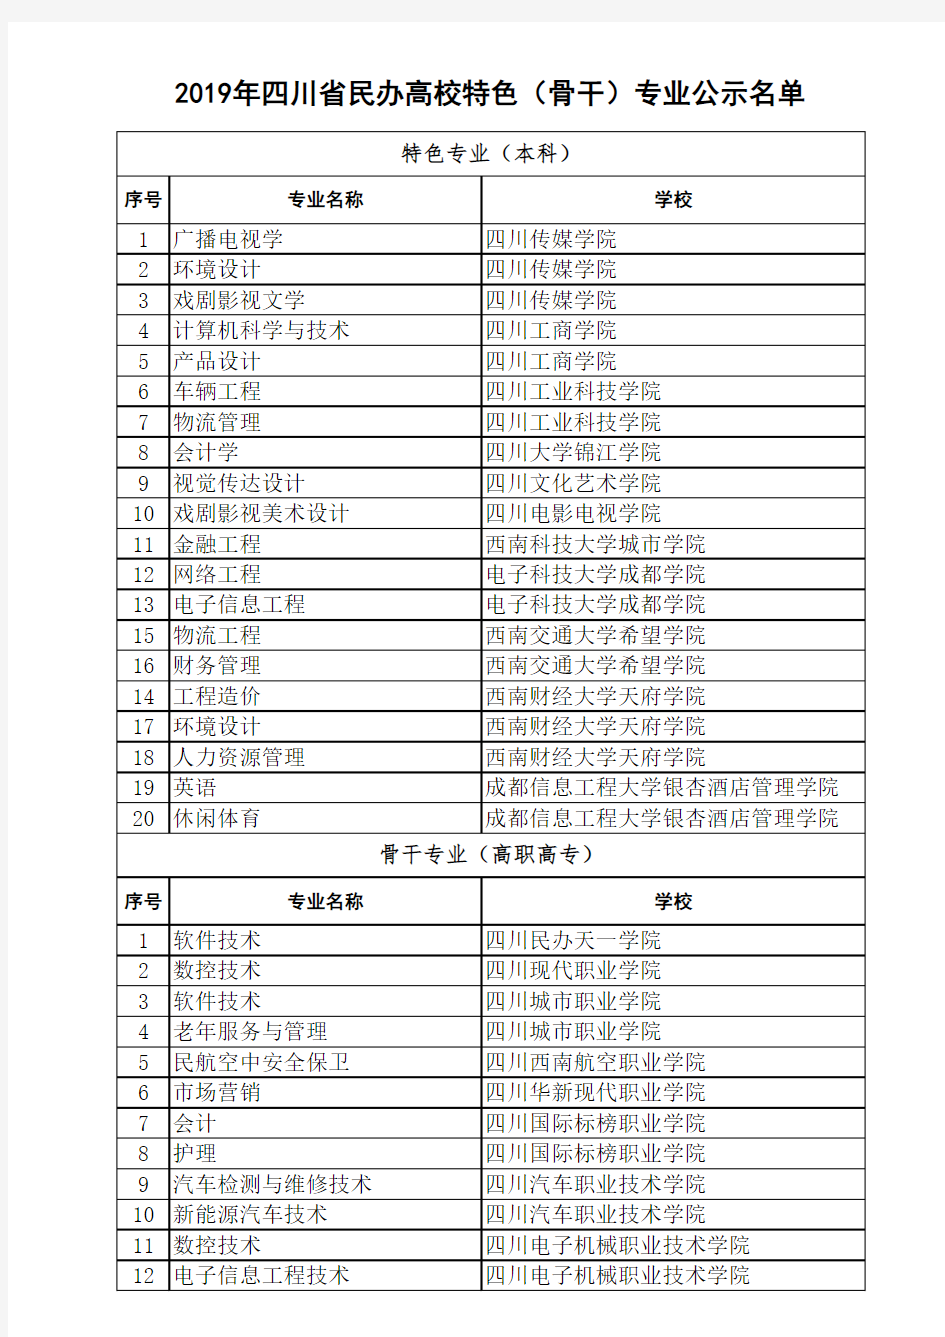 2019年四川省民办高校特色(骨干)专业公示名单